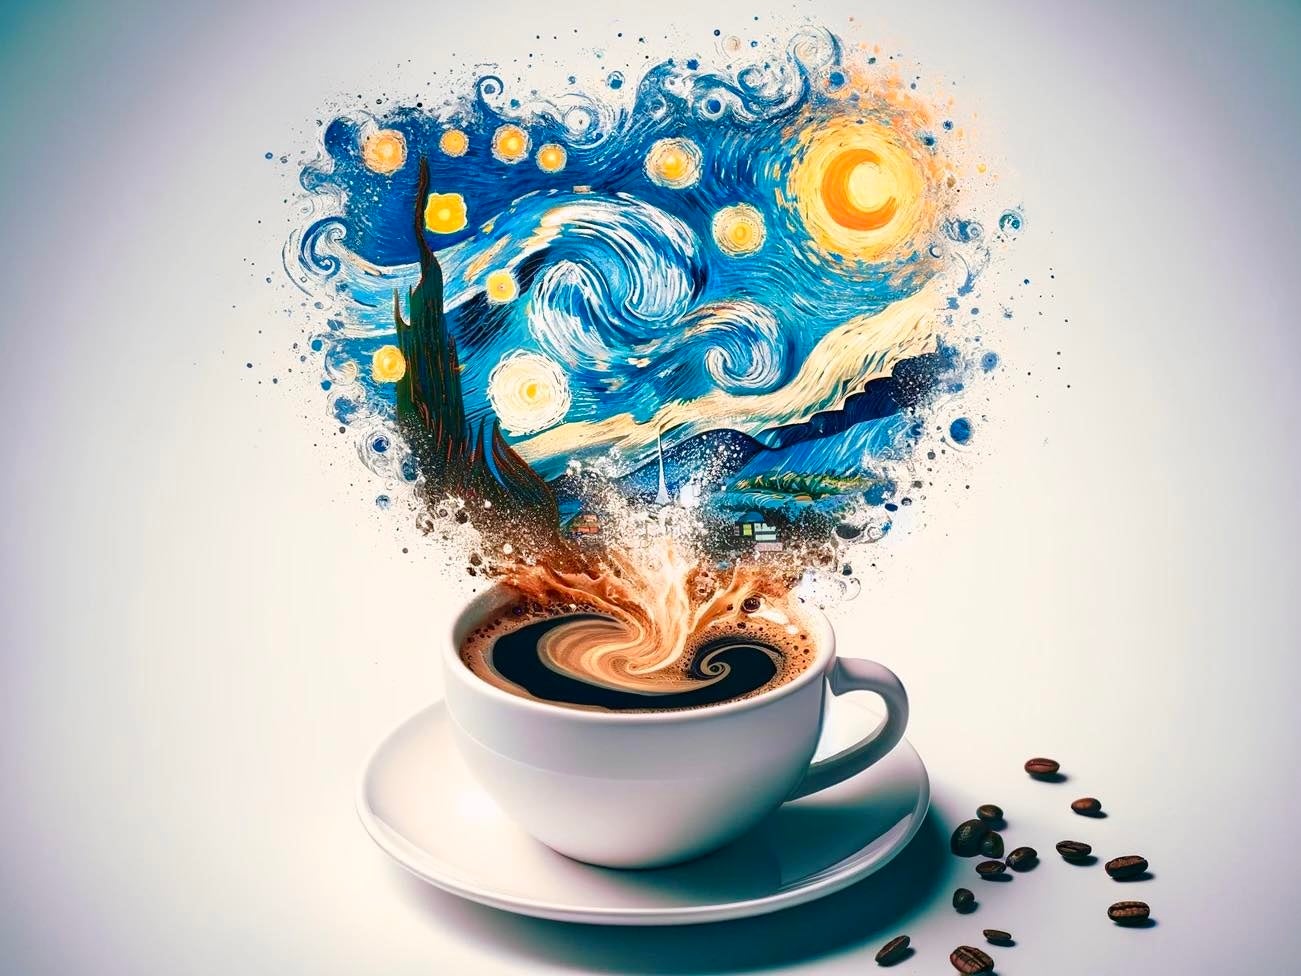 バリスタ世界チャンピオン粕谷哲が、ゴッホの名画「星月夜」をテーマにしたブレンドコーヒーを開発。代官山「DRELLA」で販売開始。